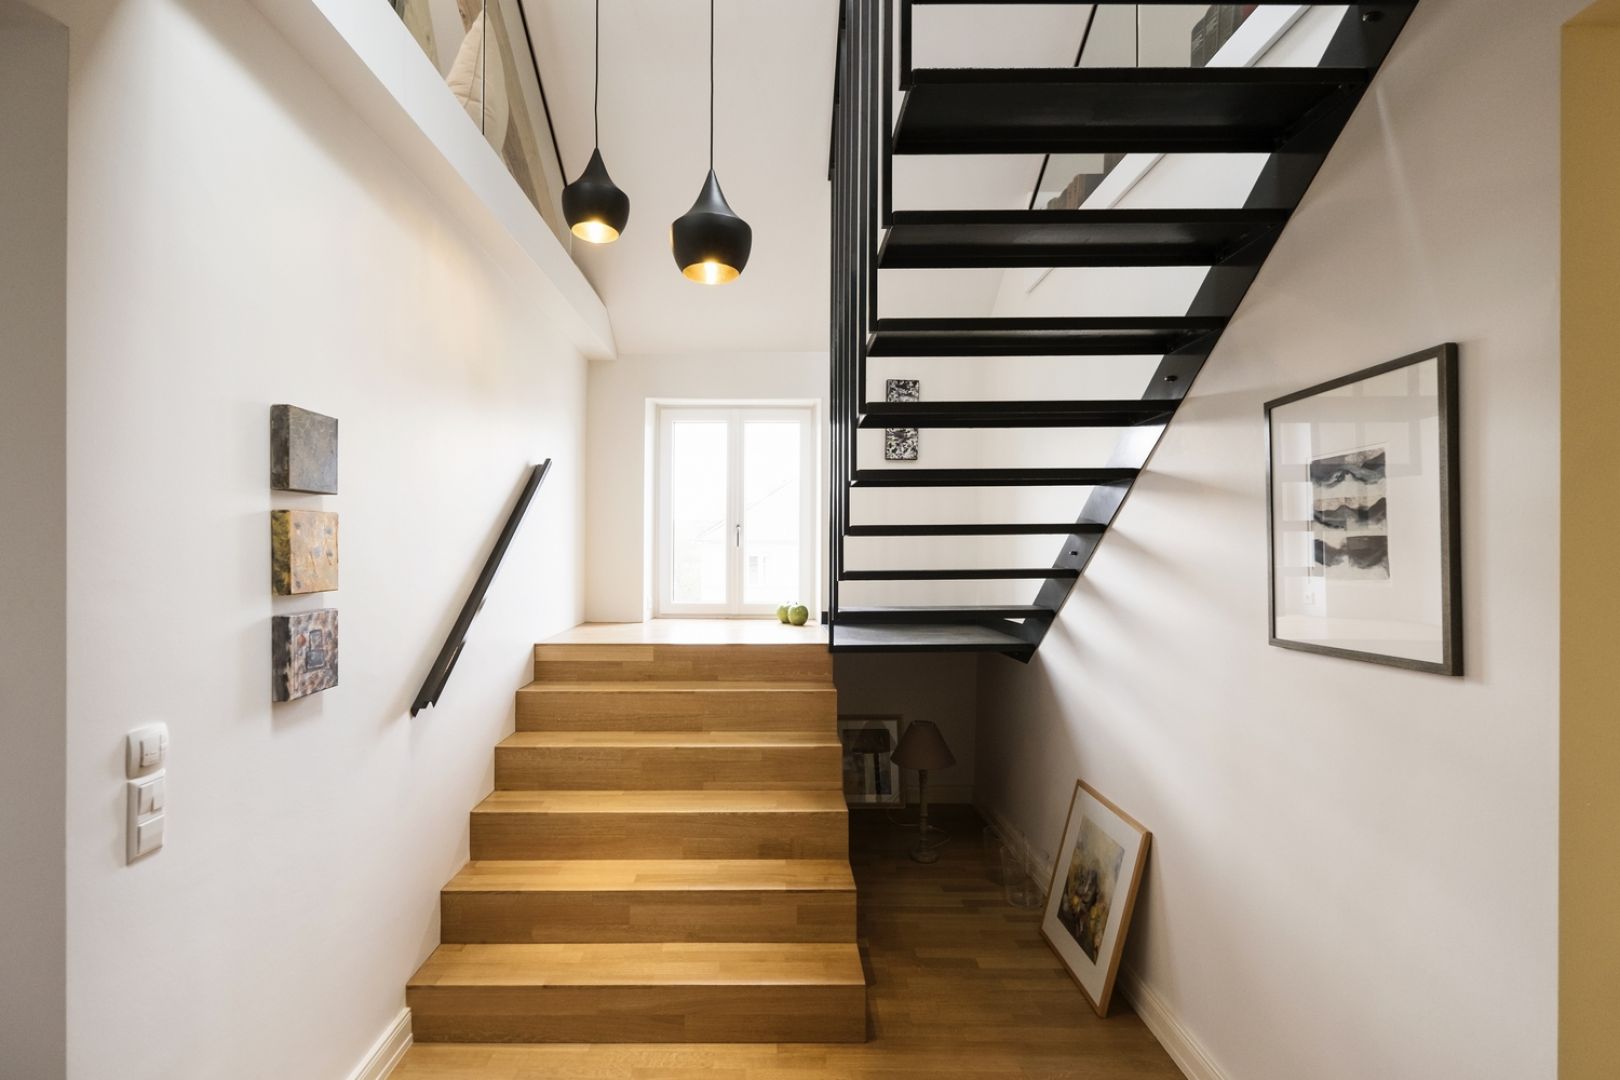 Nowe schody nie tylko połączyły oba piętra, ale dzięki poszerzeniu dopuszczają więcej światła padającego z dachu do korytarza na drugiej kondygnacji. Fot. Serge Ecker (GRID-Design) 